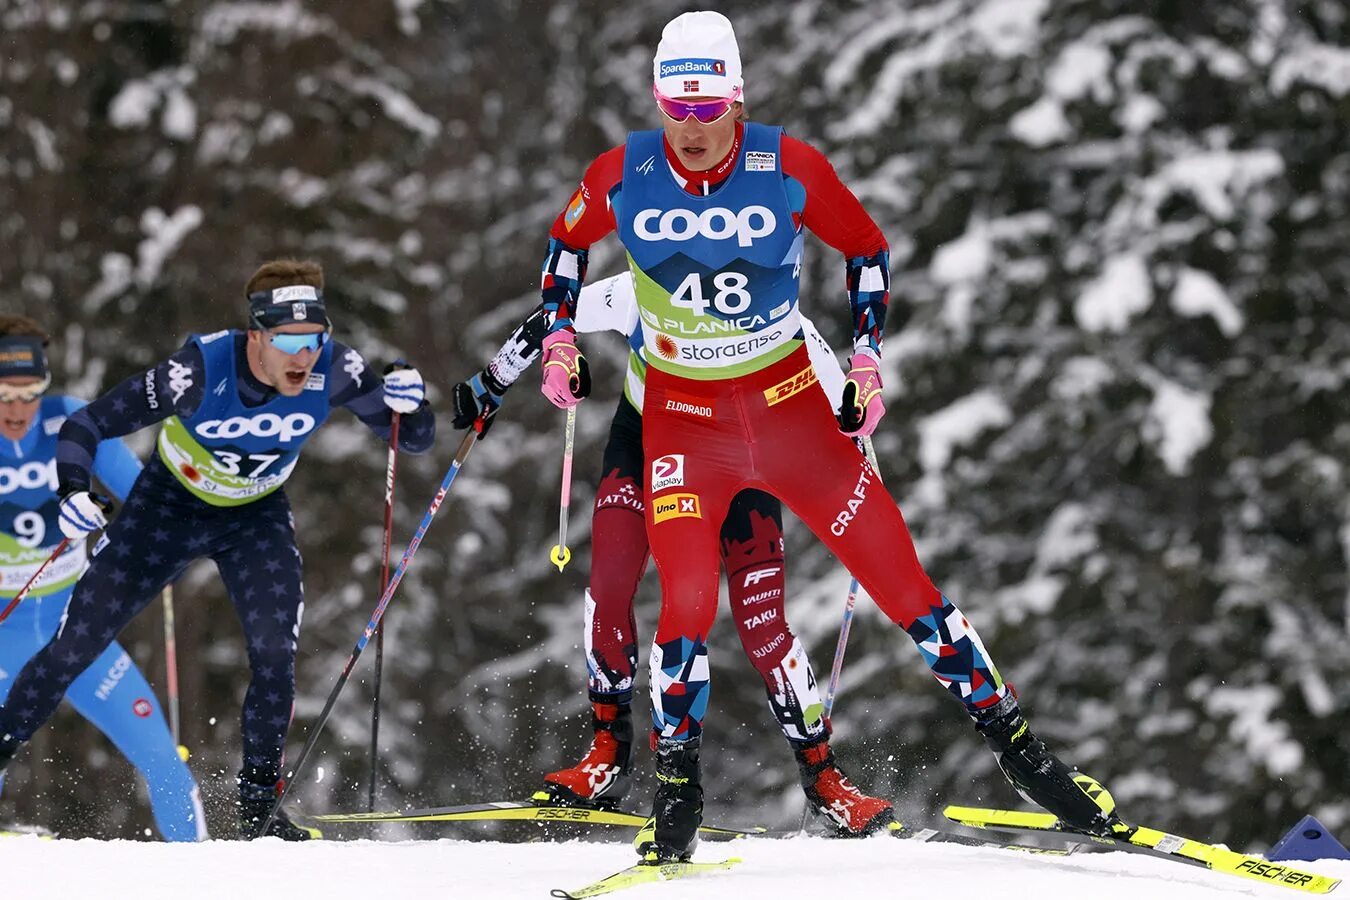 Ски время человека. Йоханнес Клебо. Лыжный спорт. Лыжники. Норвежские лыжники.